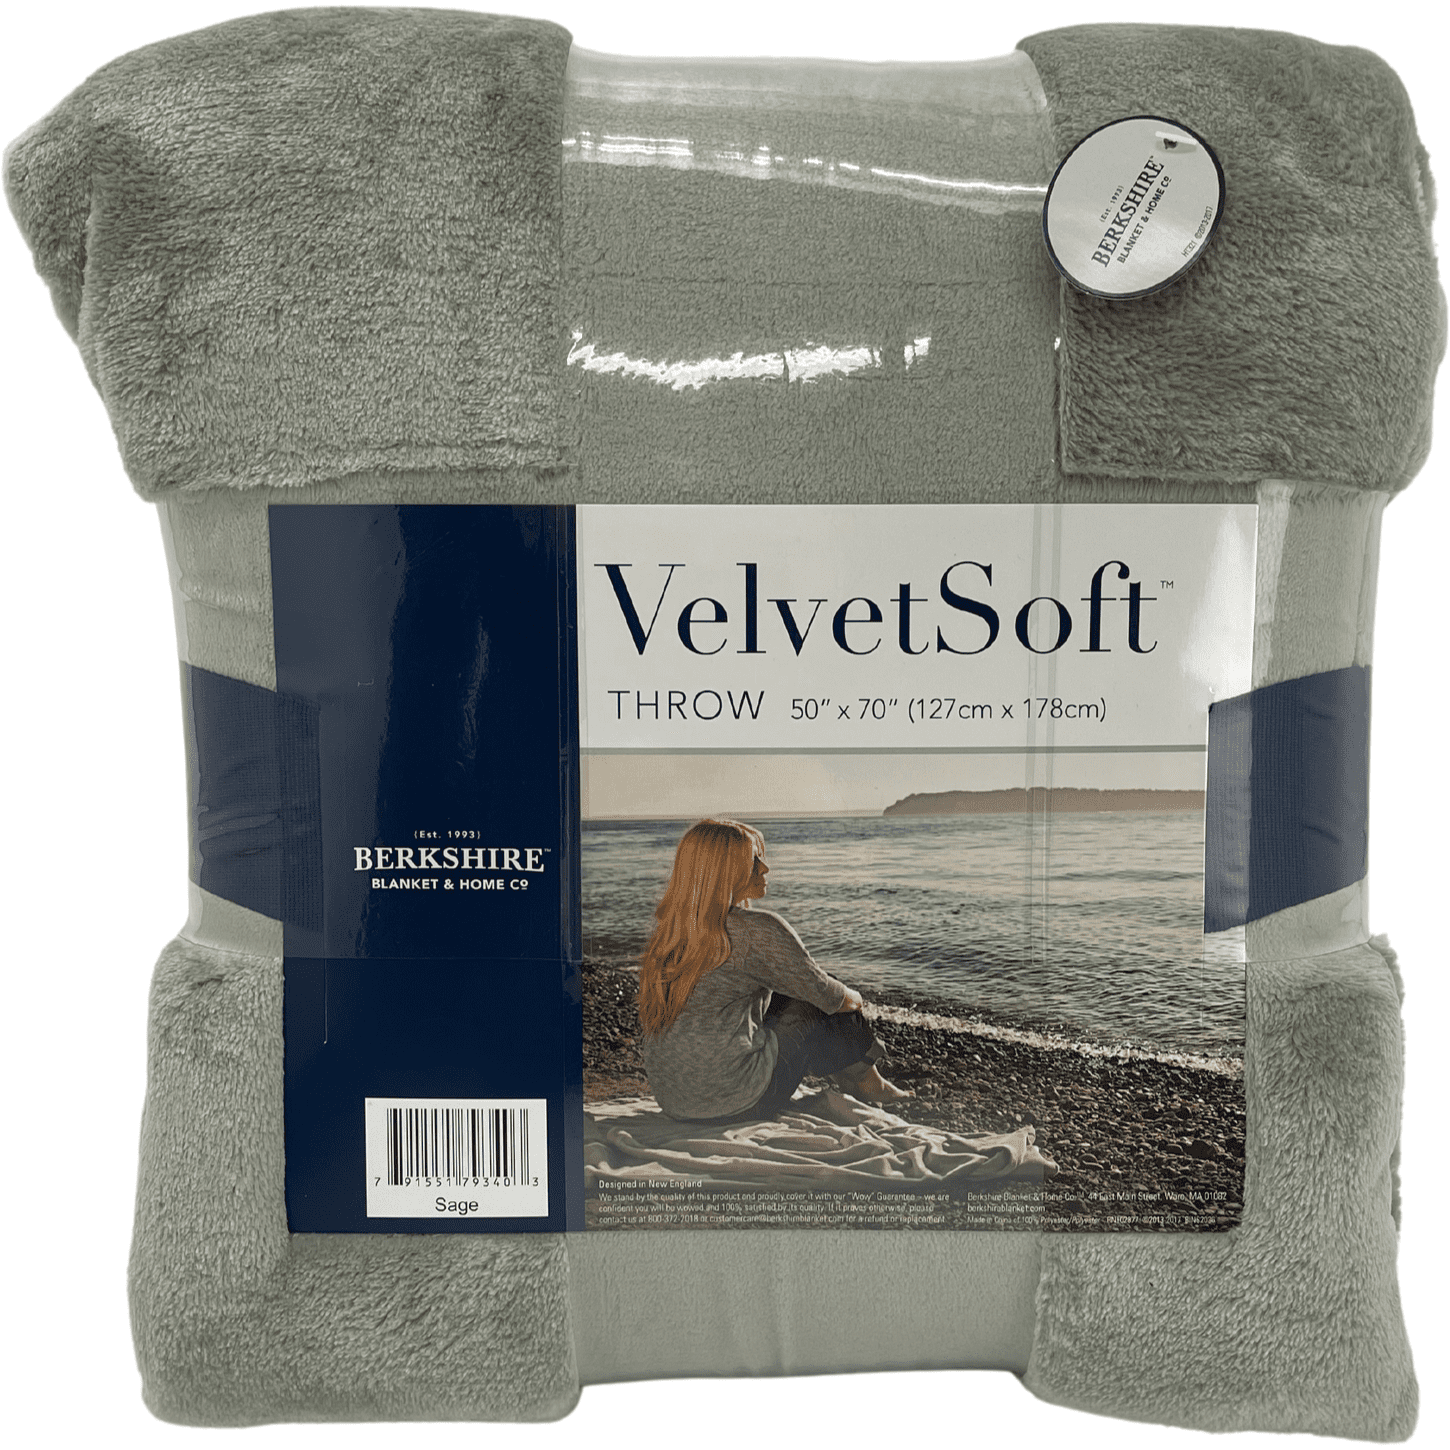 Berkshire Velvet Soft Throw Blanket Gift Pack / 3 Pack / Plush / 50"x 70" / Gradient Colour / Various Colours